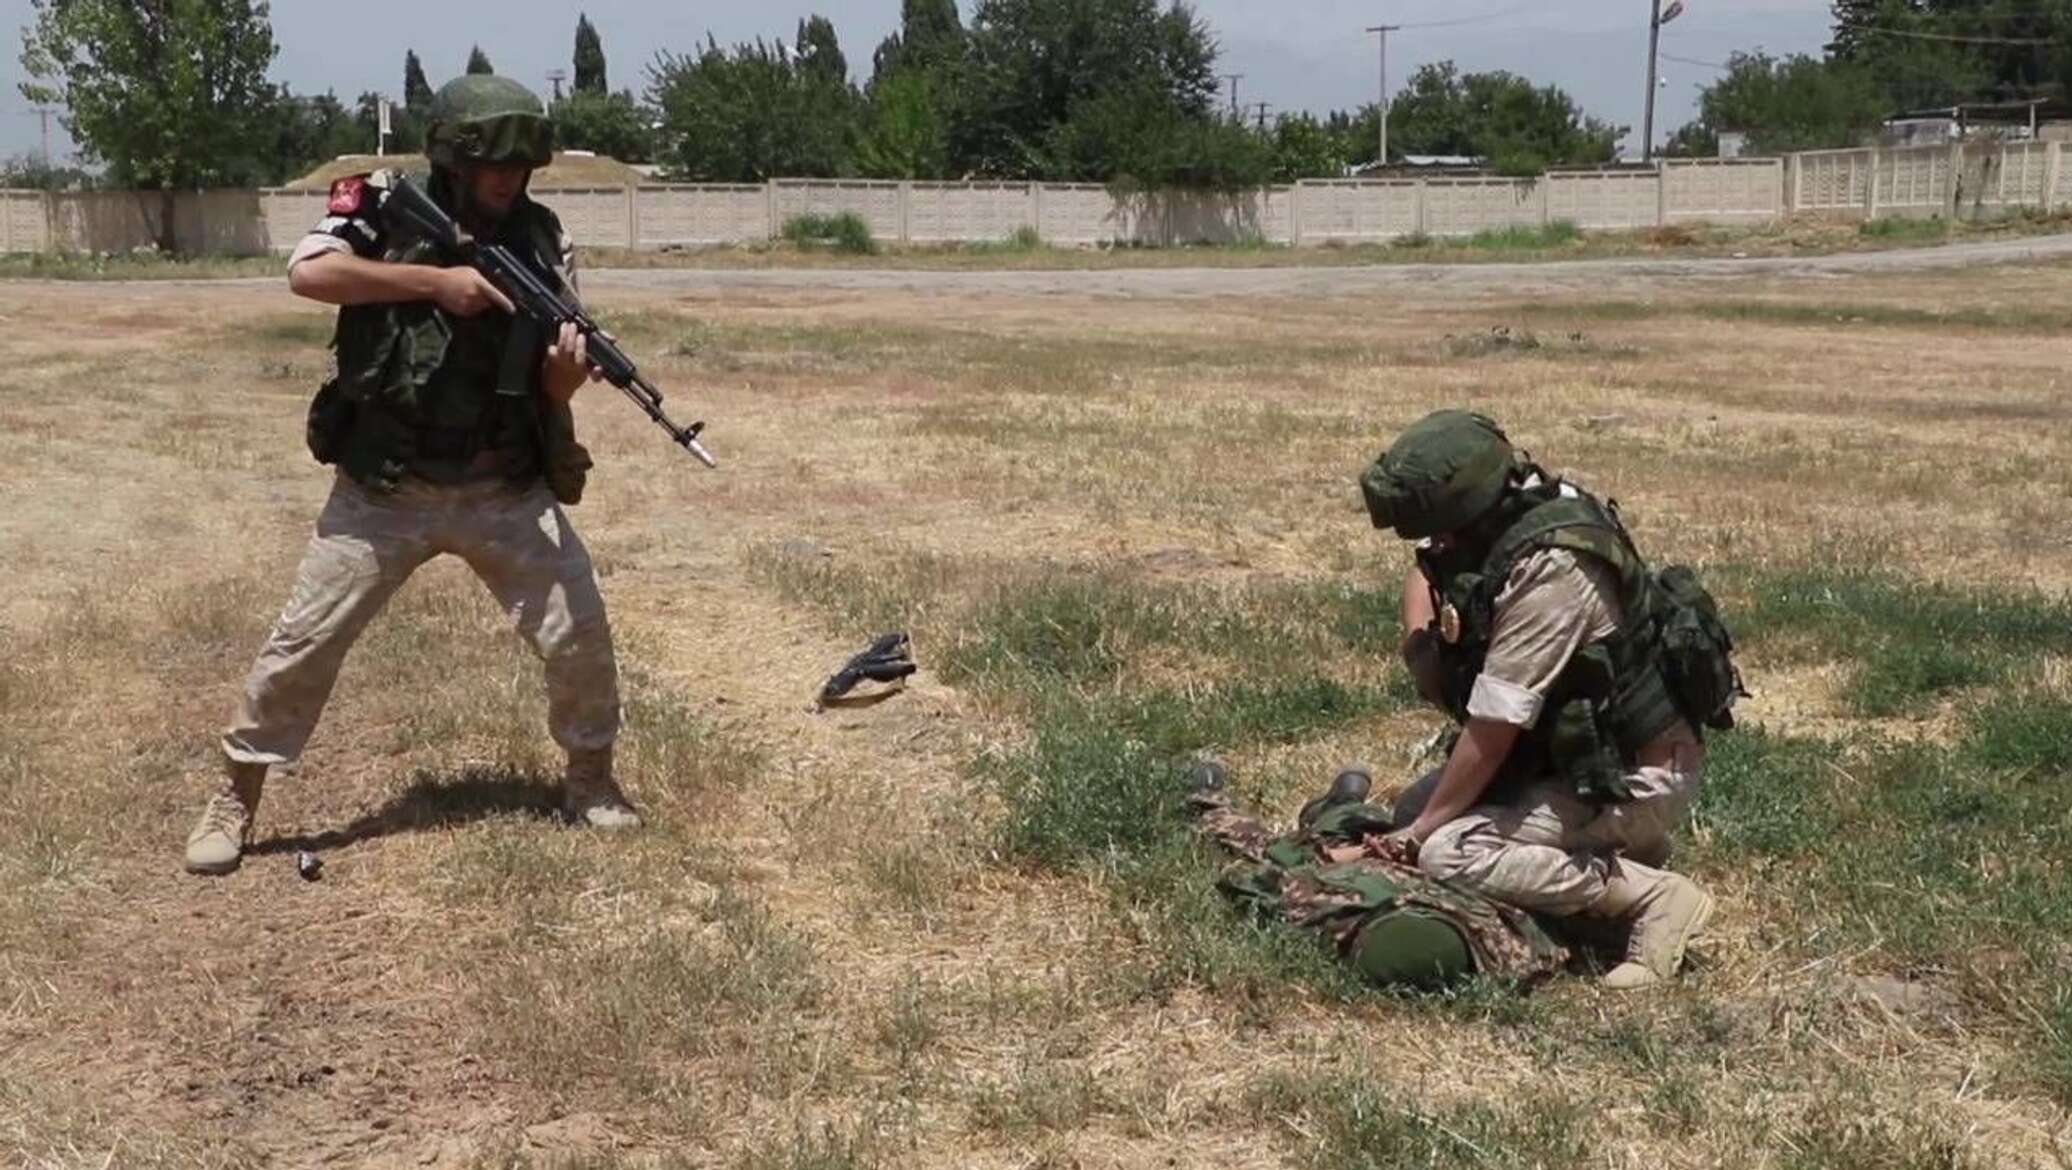 Нападение на военную базу. Нападение на погранзаставу в Таджикистане 6 ноября 2019. 201 Военная база Таджикистан погранвойск. Таджикская разведка.